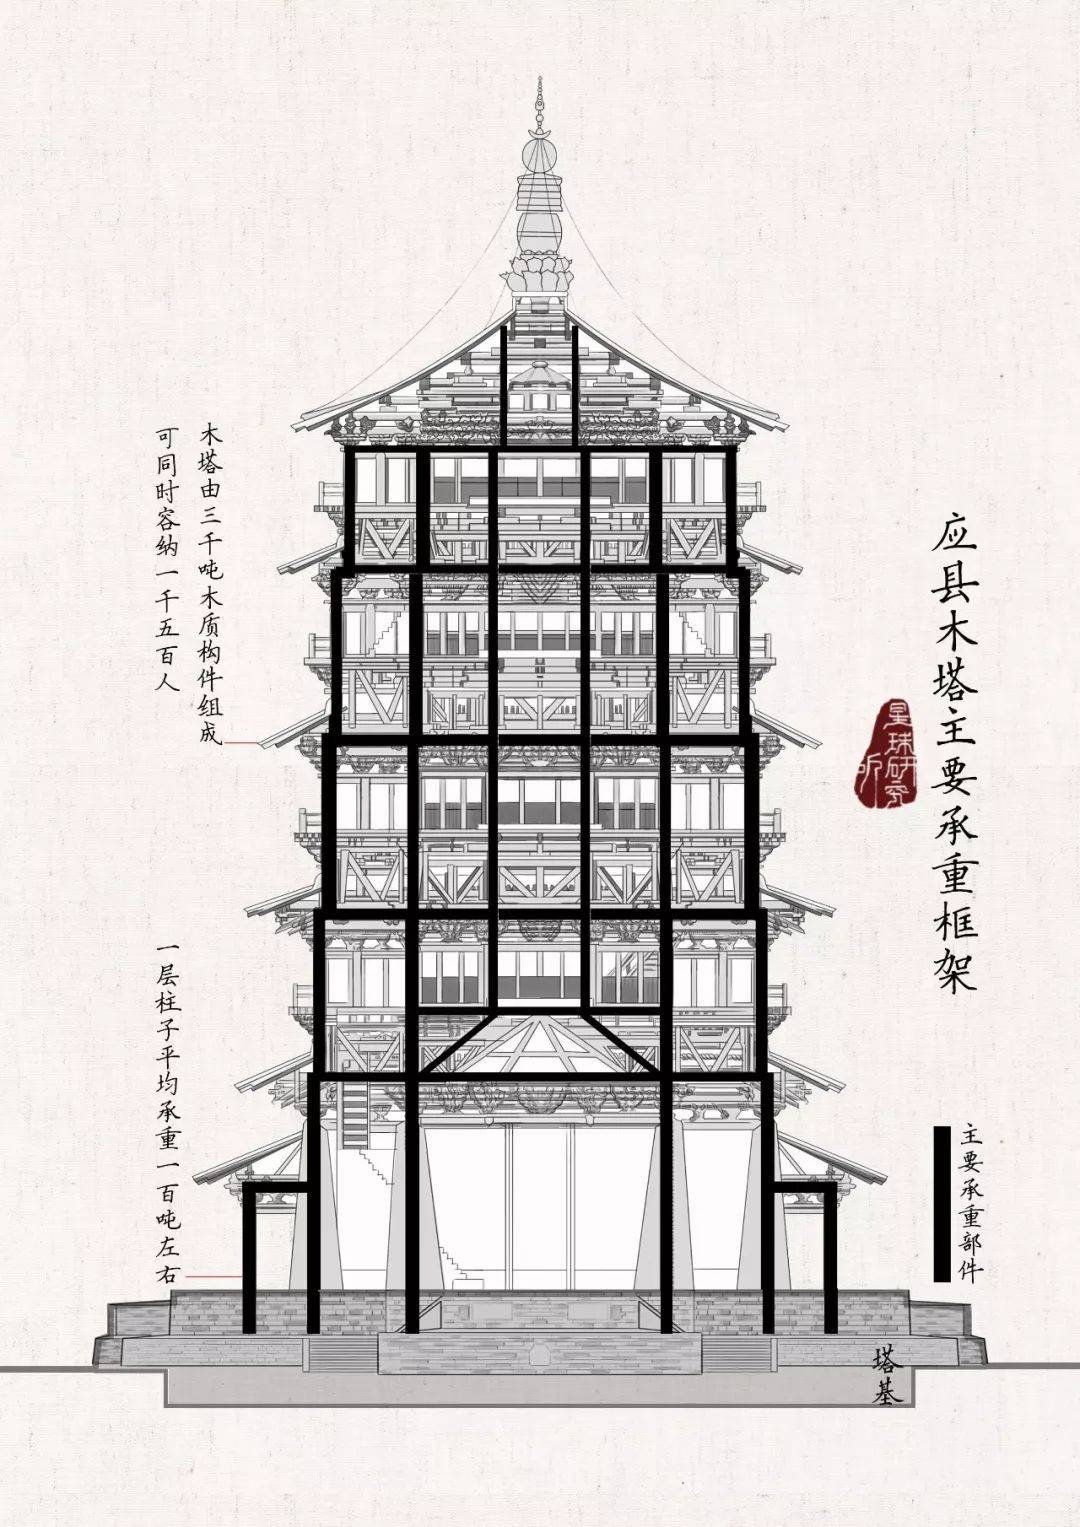 110吨 而且这一负重 自公元1056年木塔建成 已持续近千年 (应县木塔